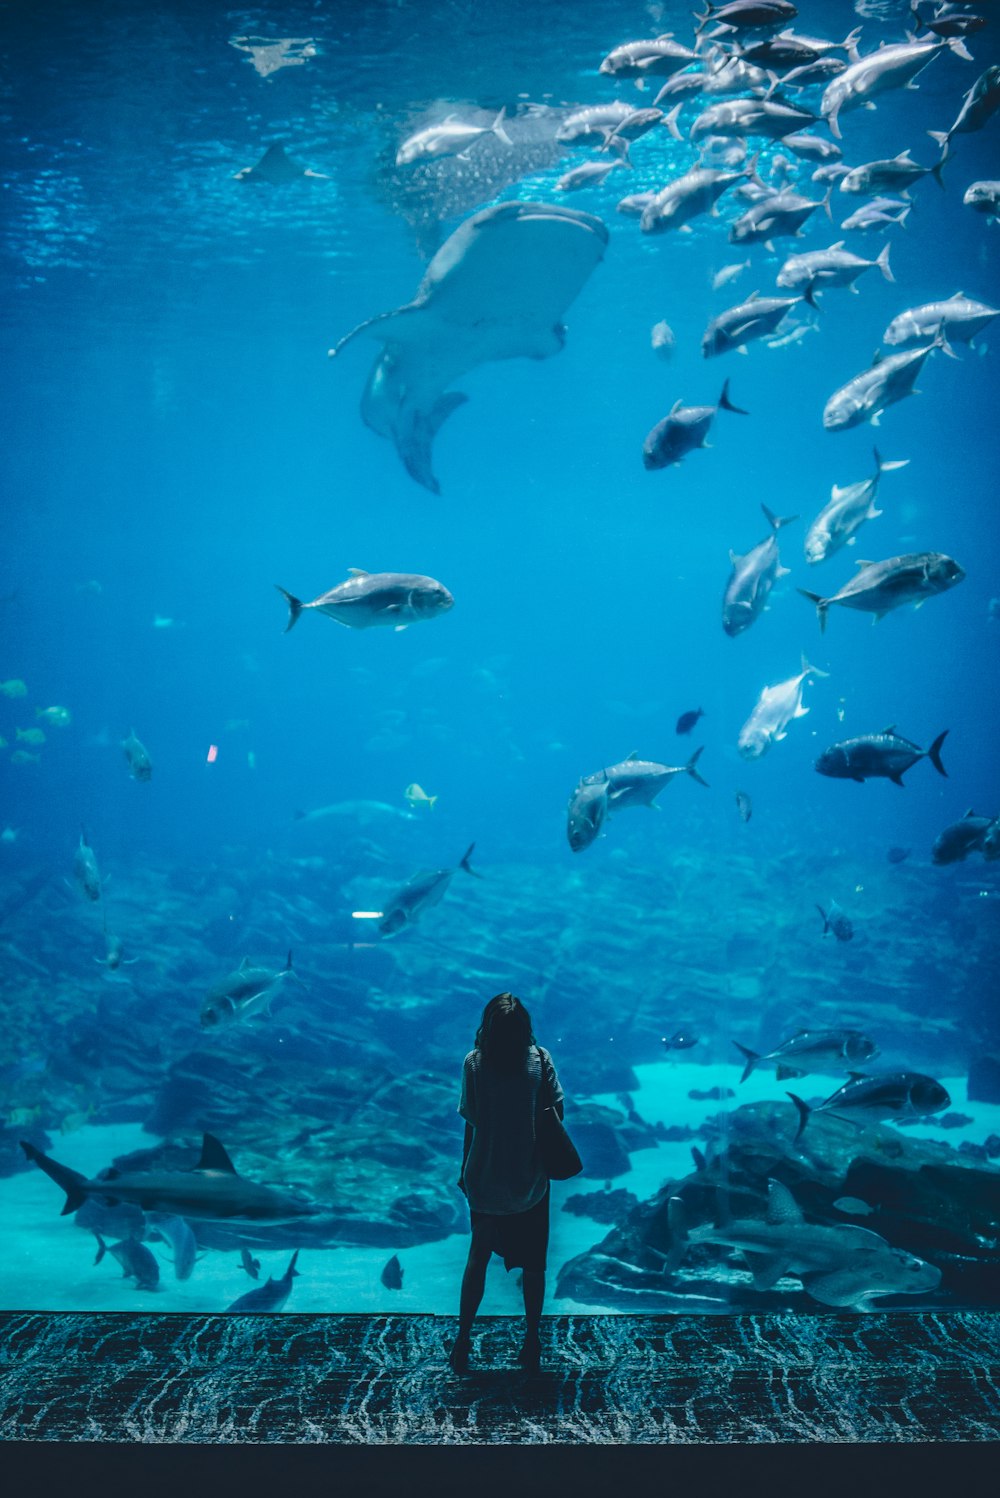 Dubai Aquarium Pictures | Download Free Images on Unsplash